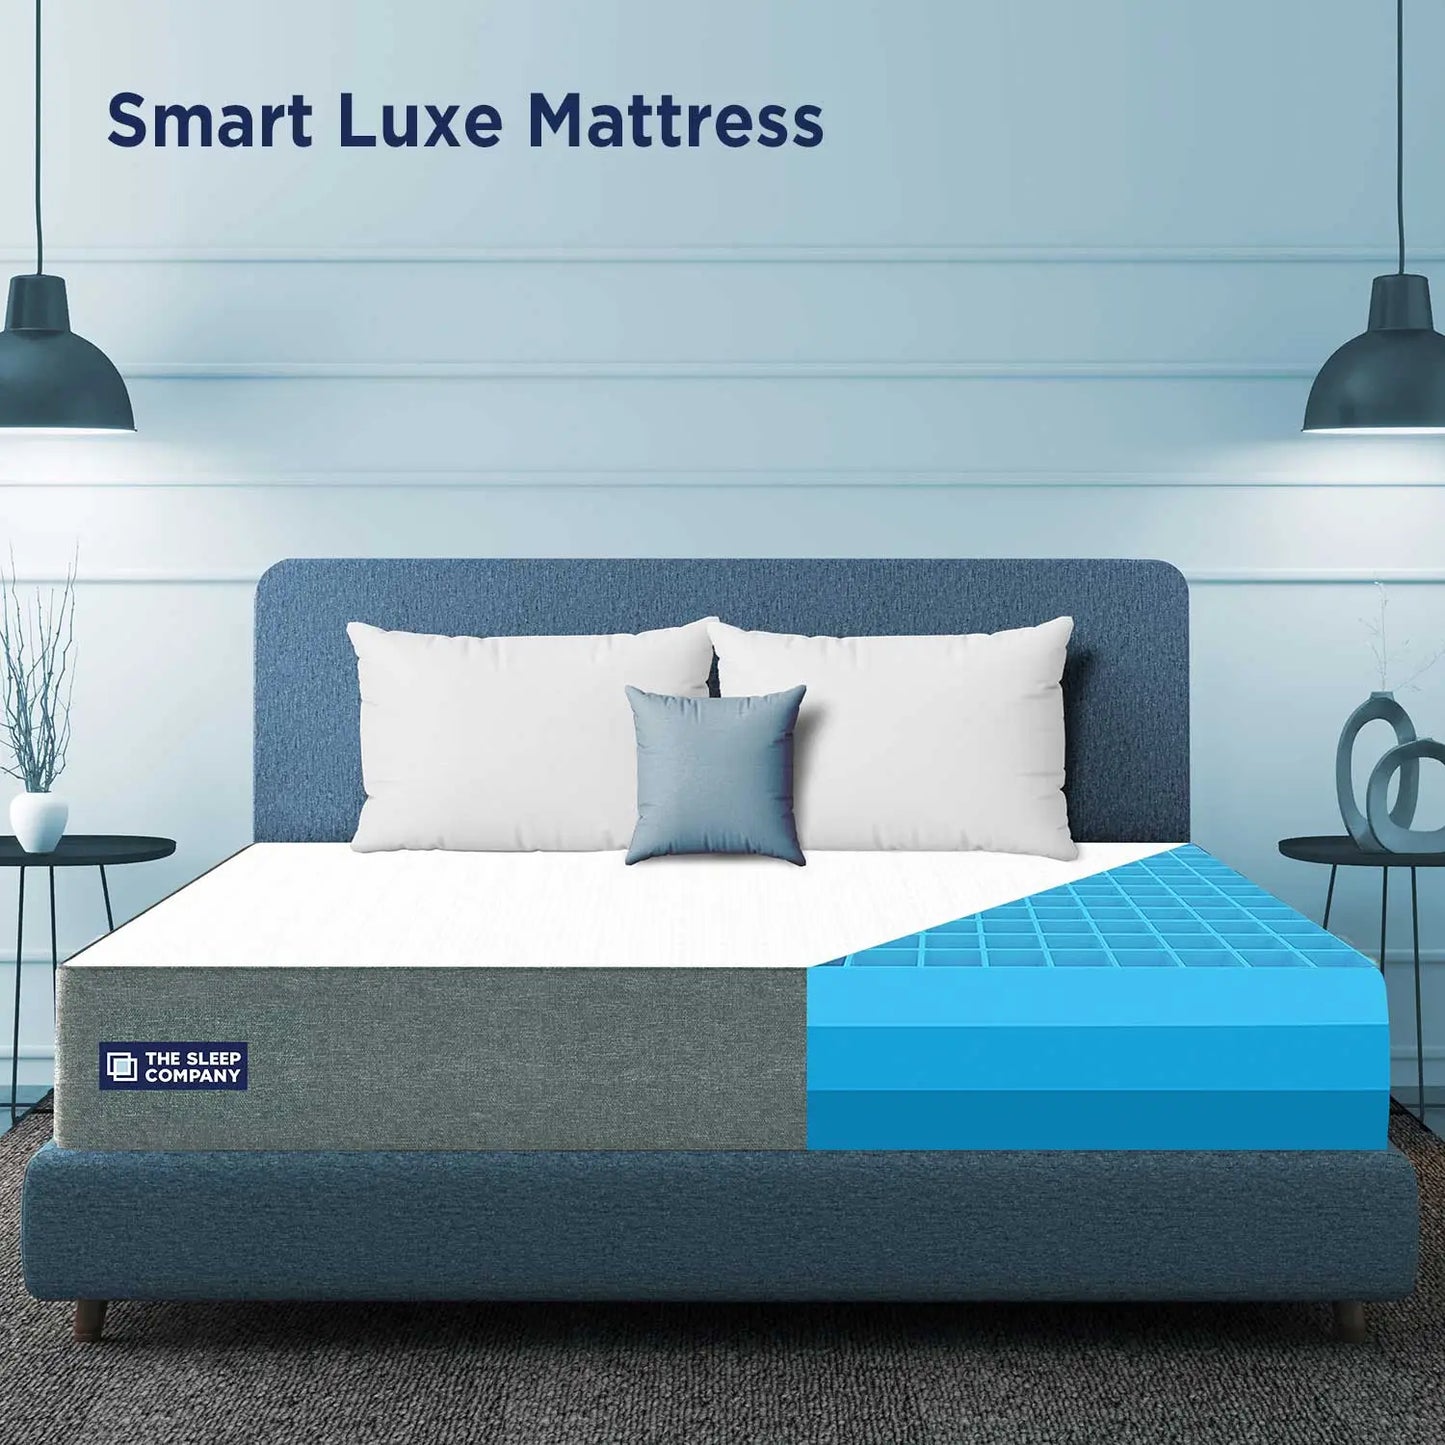 Luxe mattress